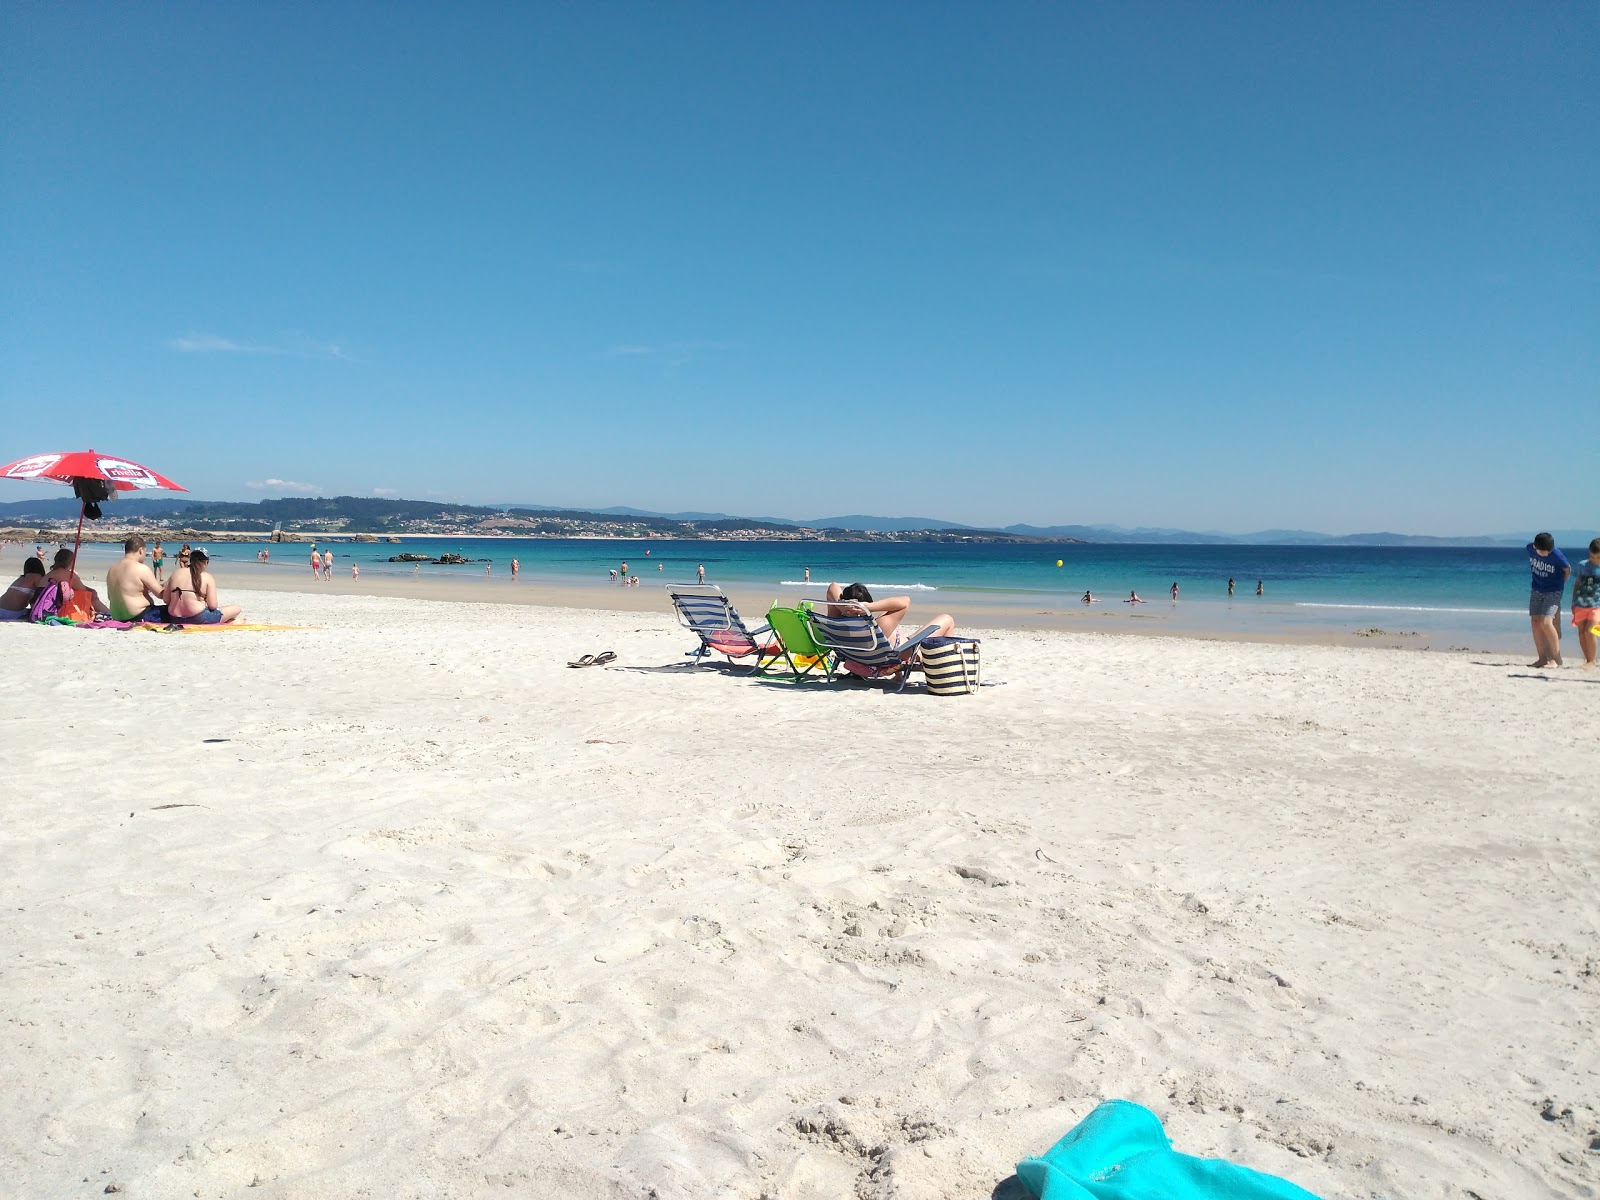 Zdjęcie Area da Cruz beach - popularne miejsce wśród znawców relaksu